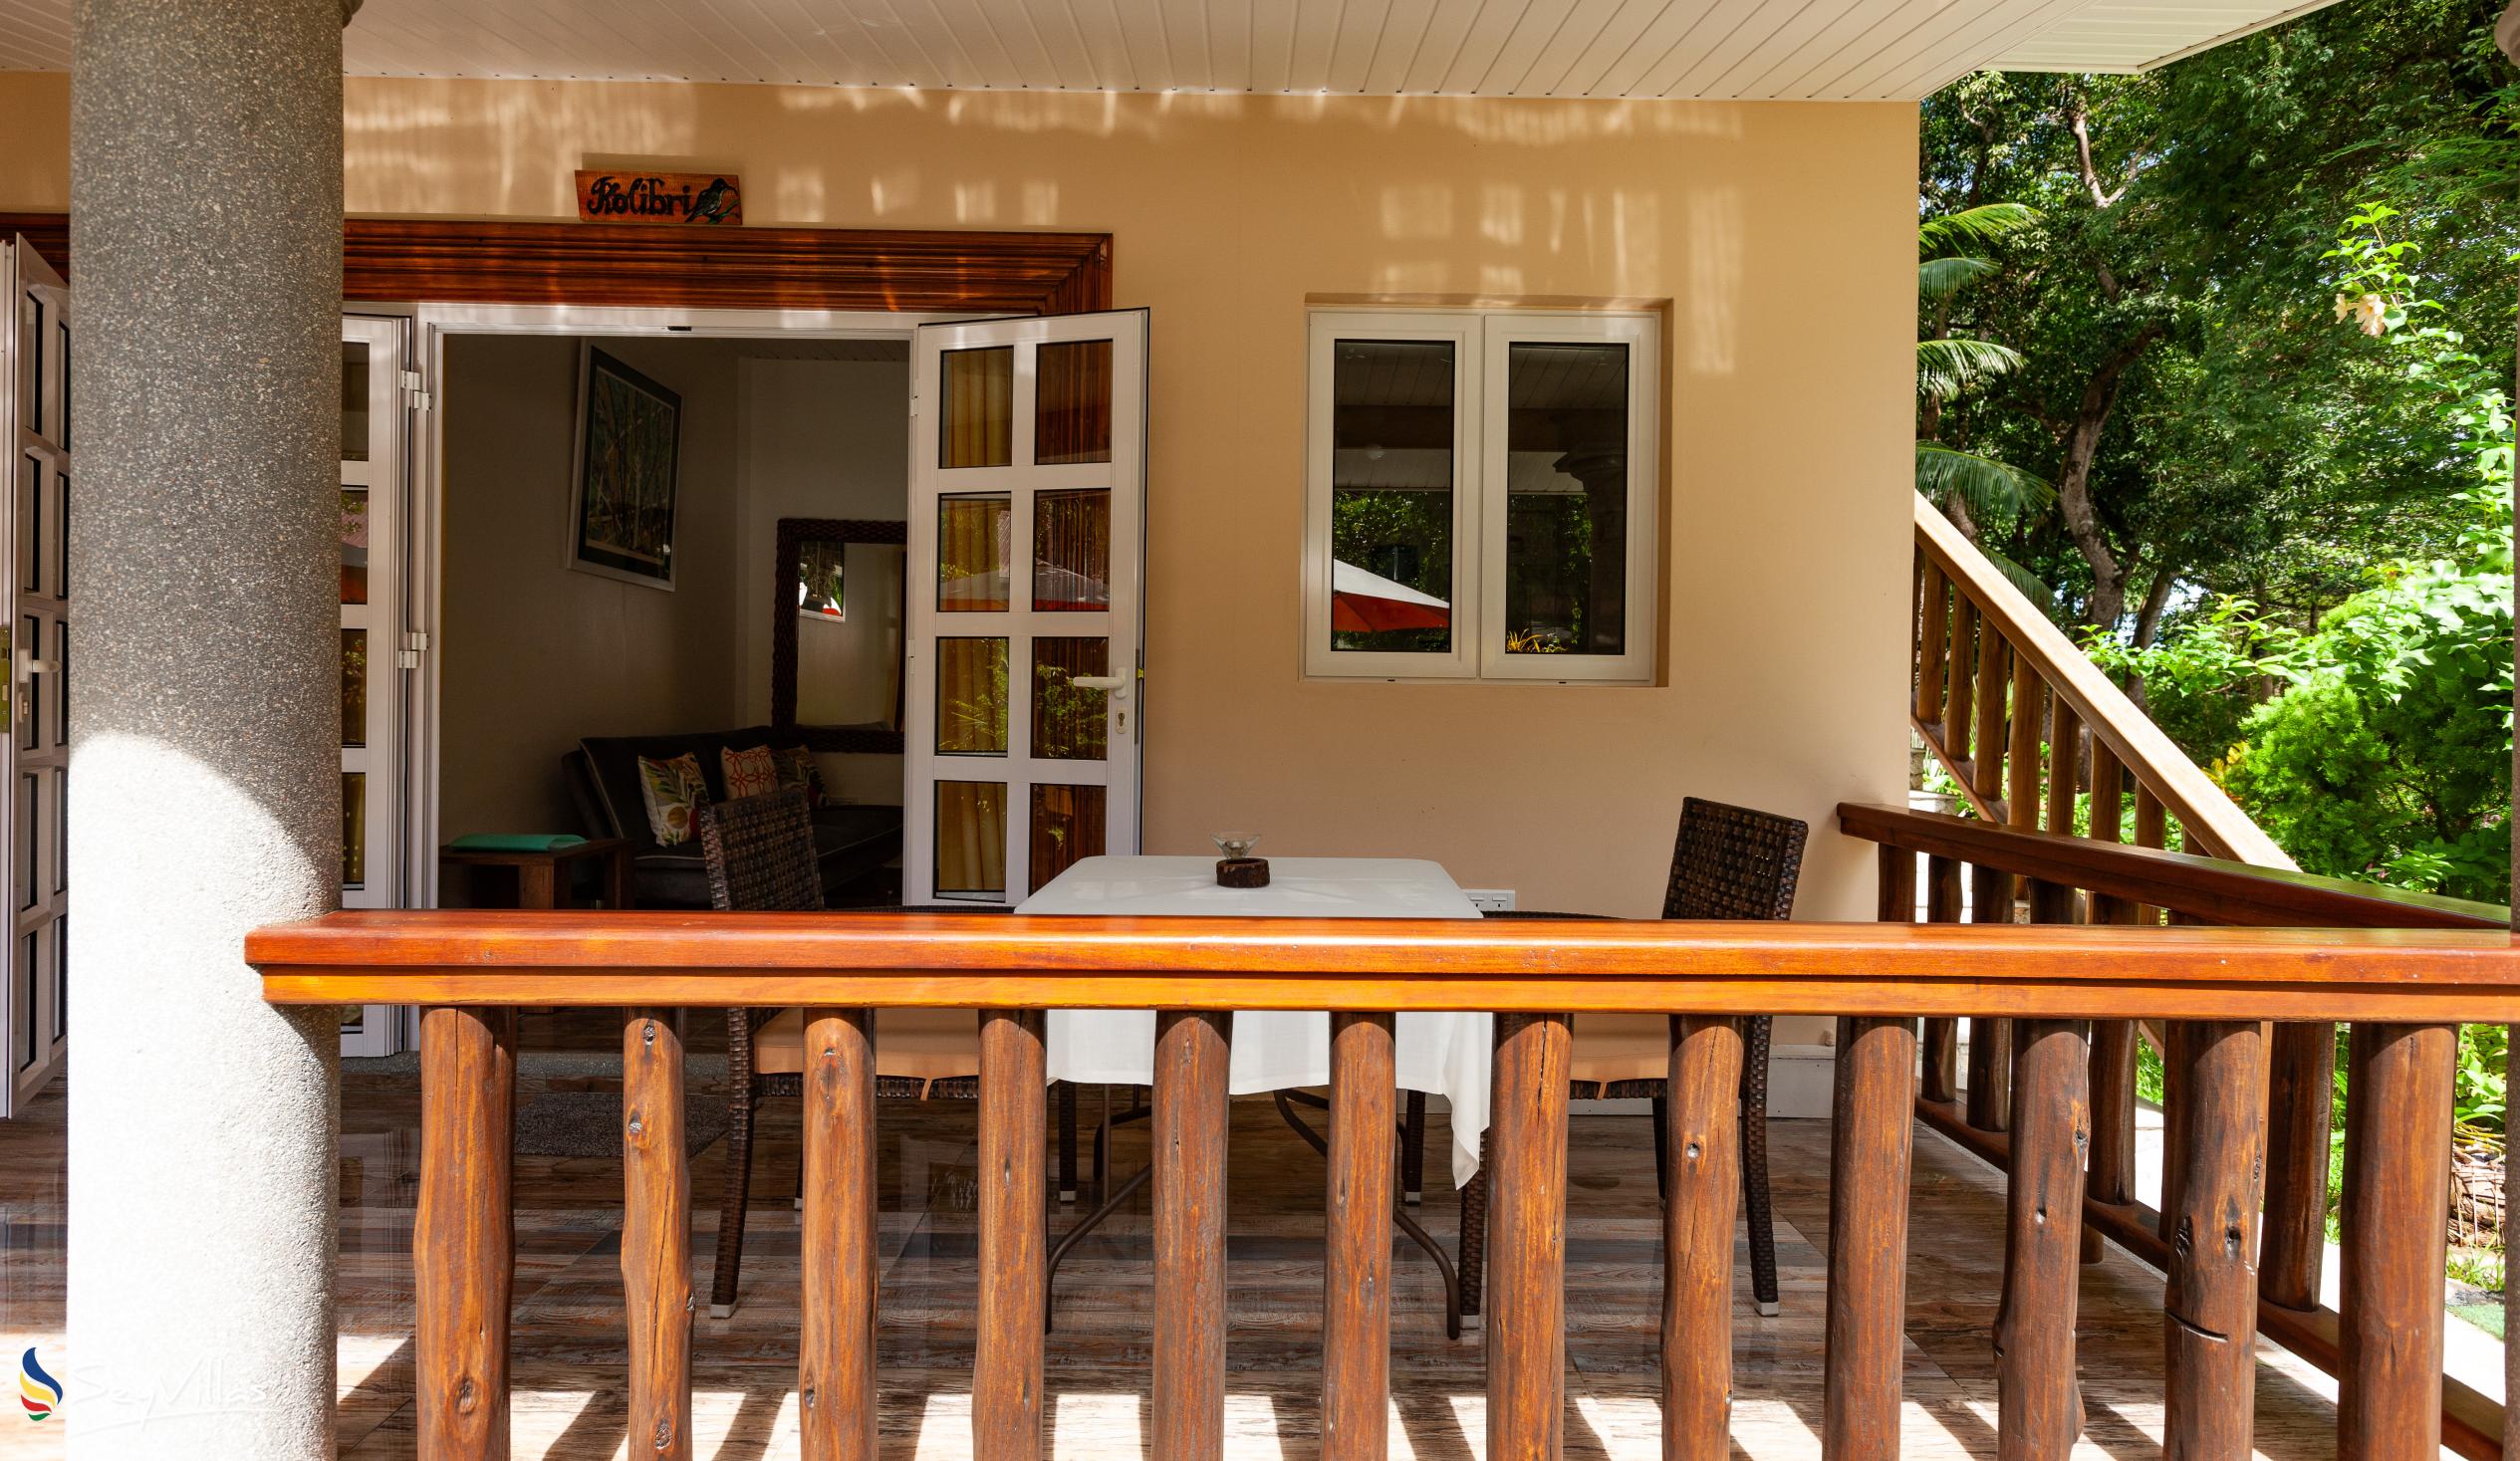 Photo 68: Chloe's Cottage - Deluxe Garden Apartment - La Digue (Seychelles)